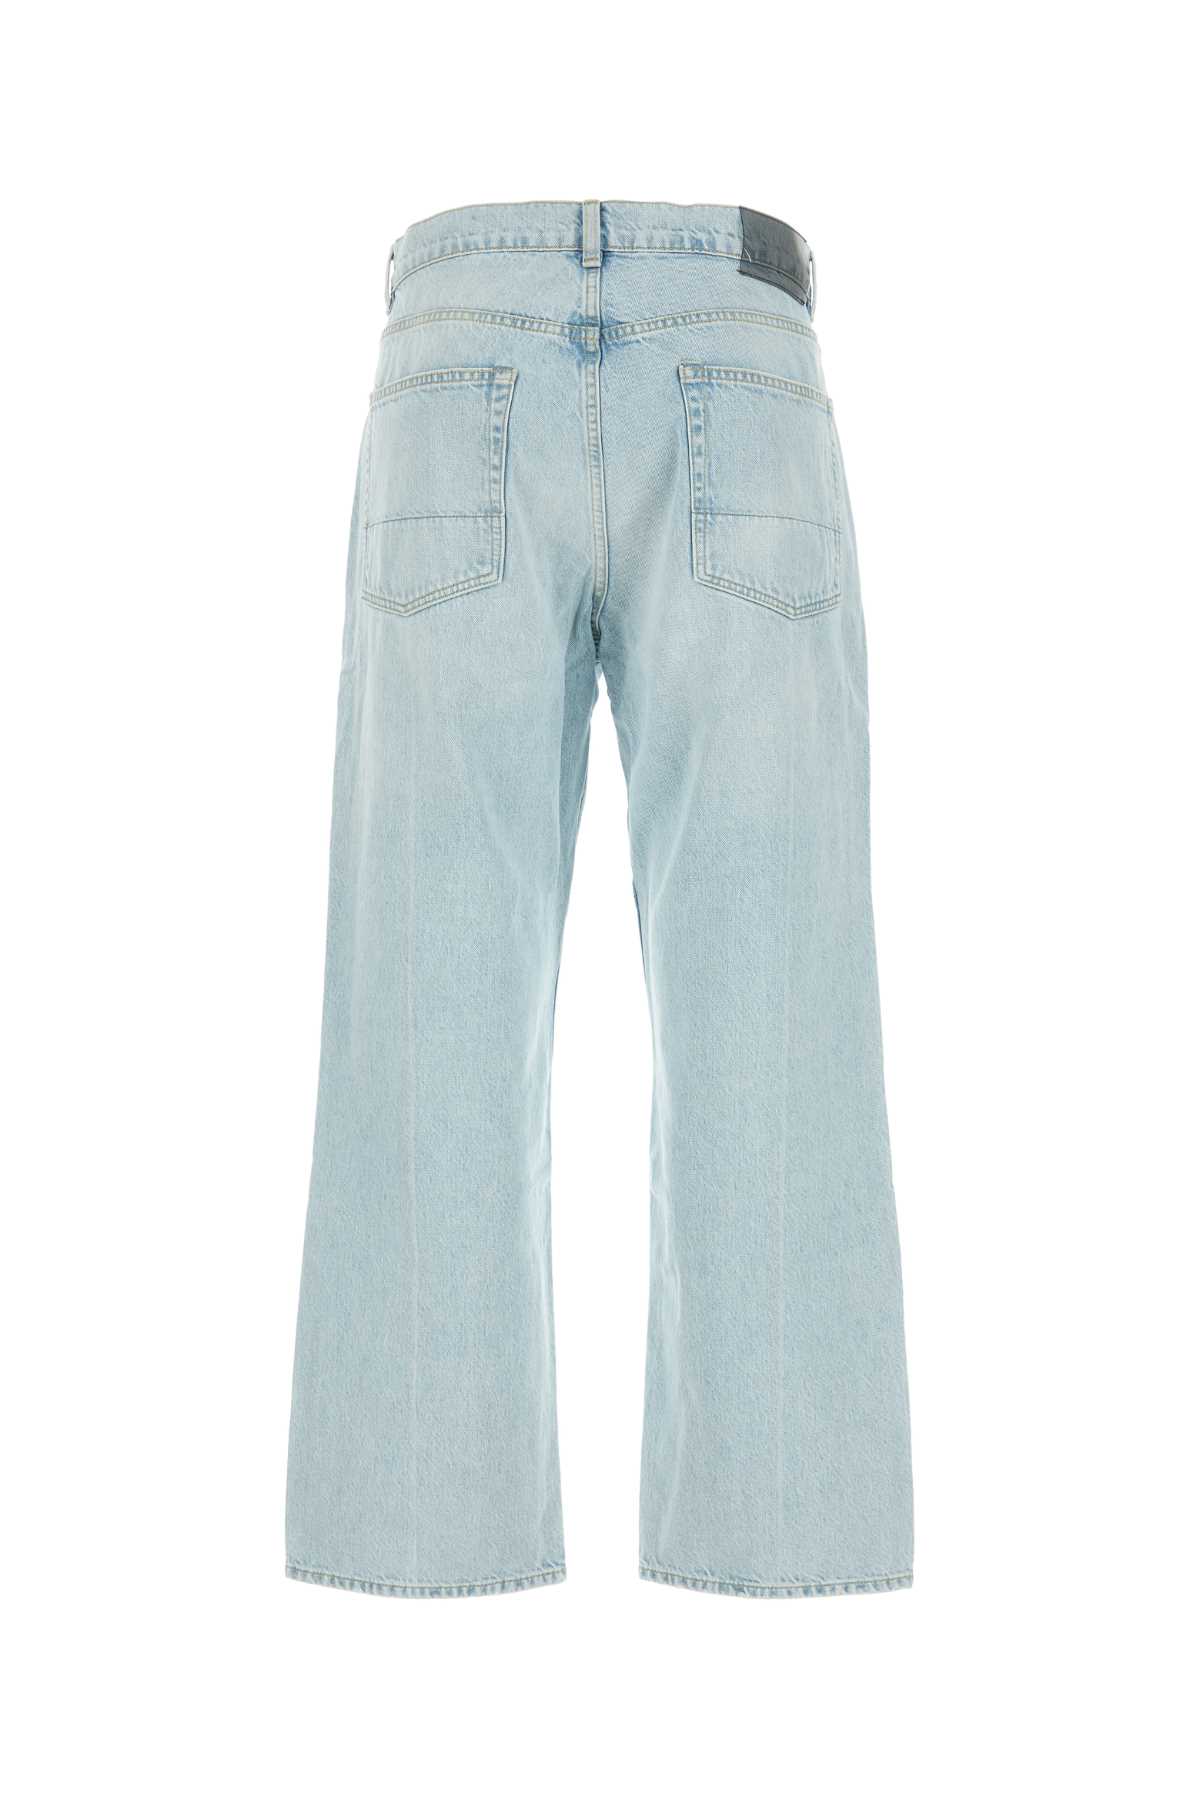 Shop Our Legacy Light-blue Denim Jeans In Superlightwash